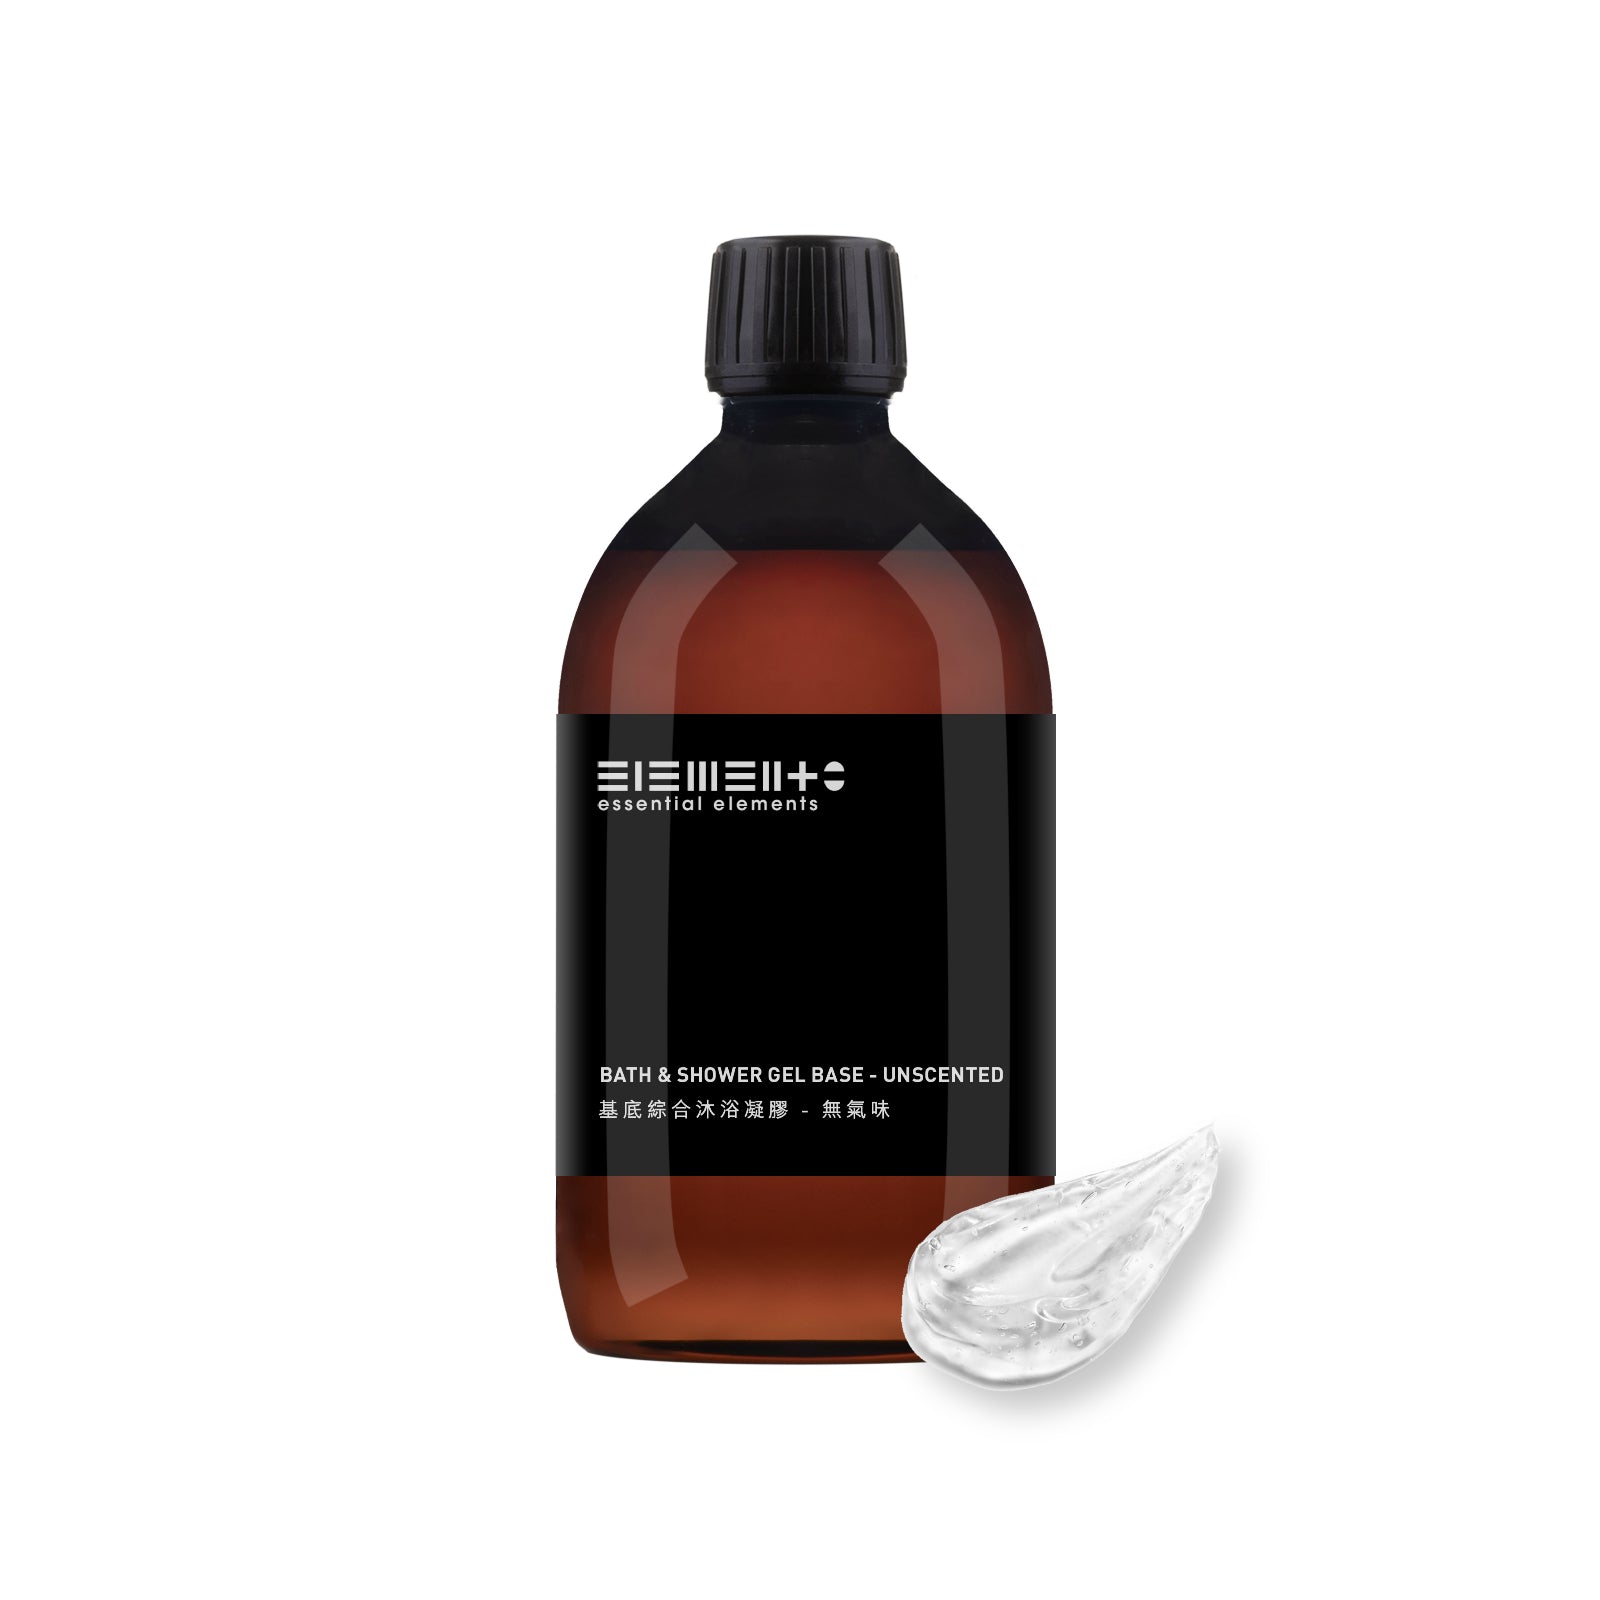 Bath & Shower Gel Base - unscented 500g